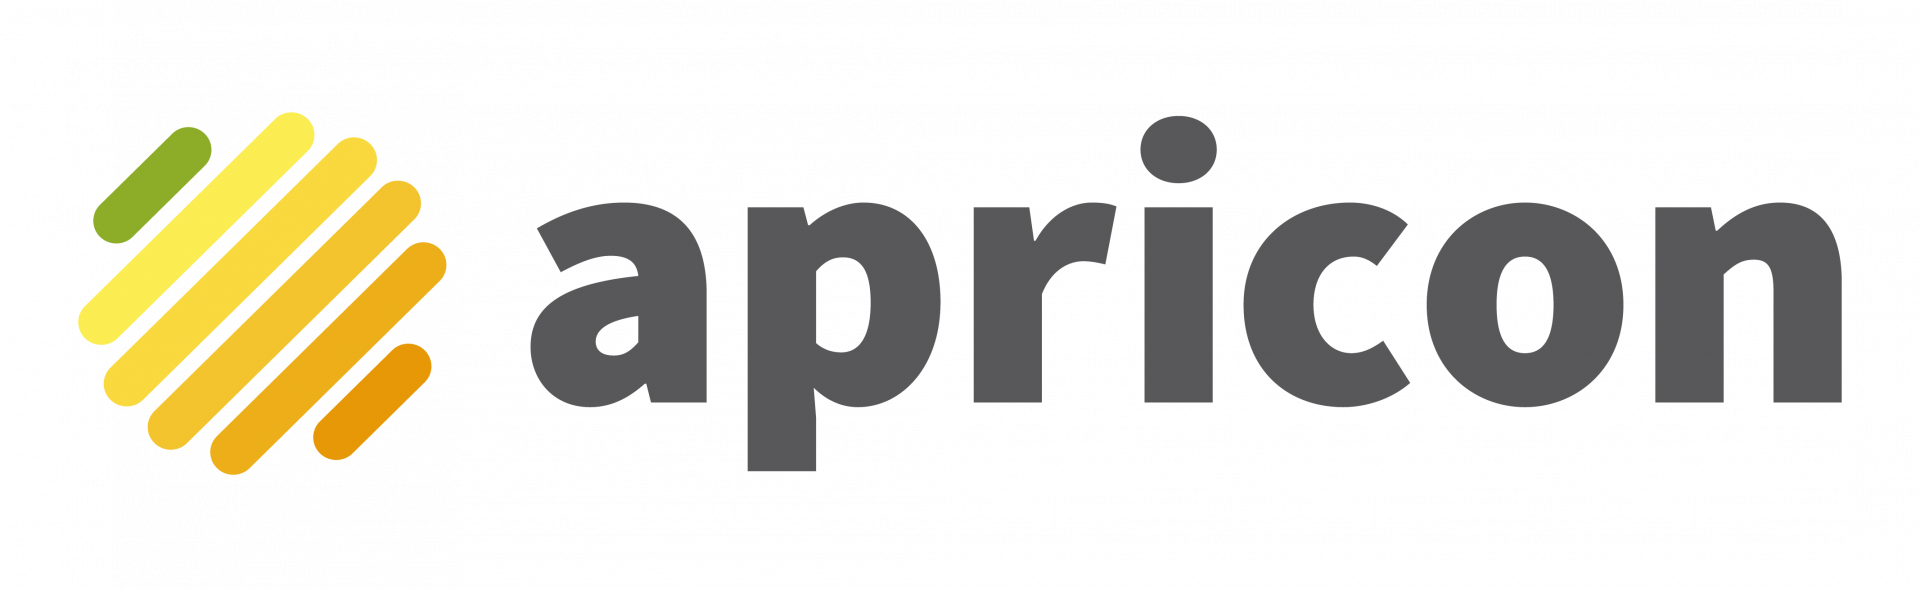 apricon logo print